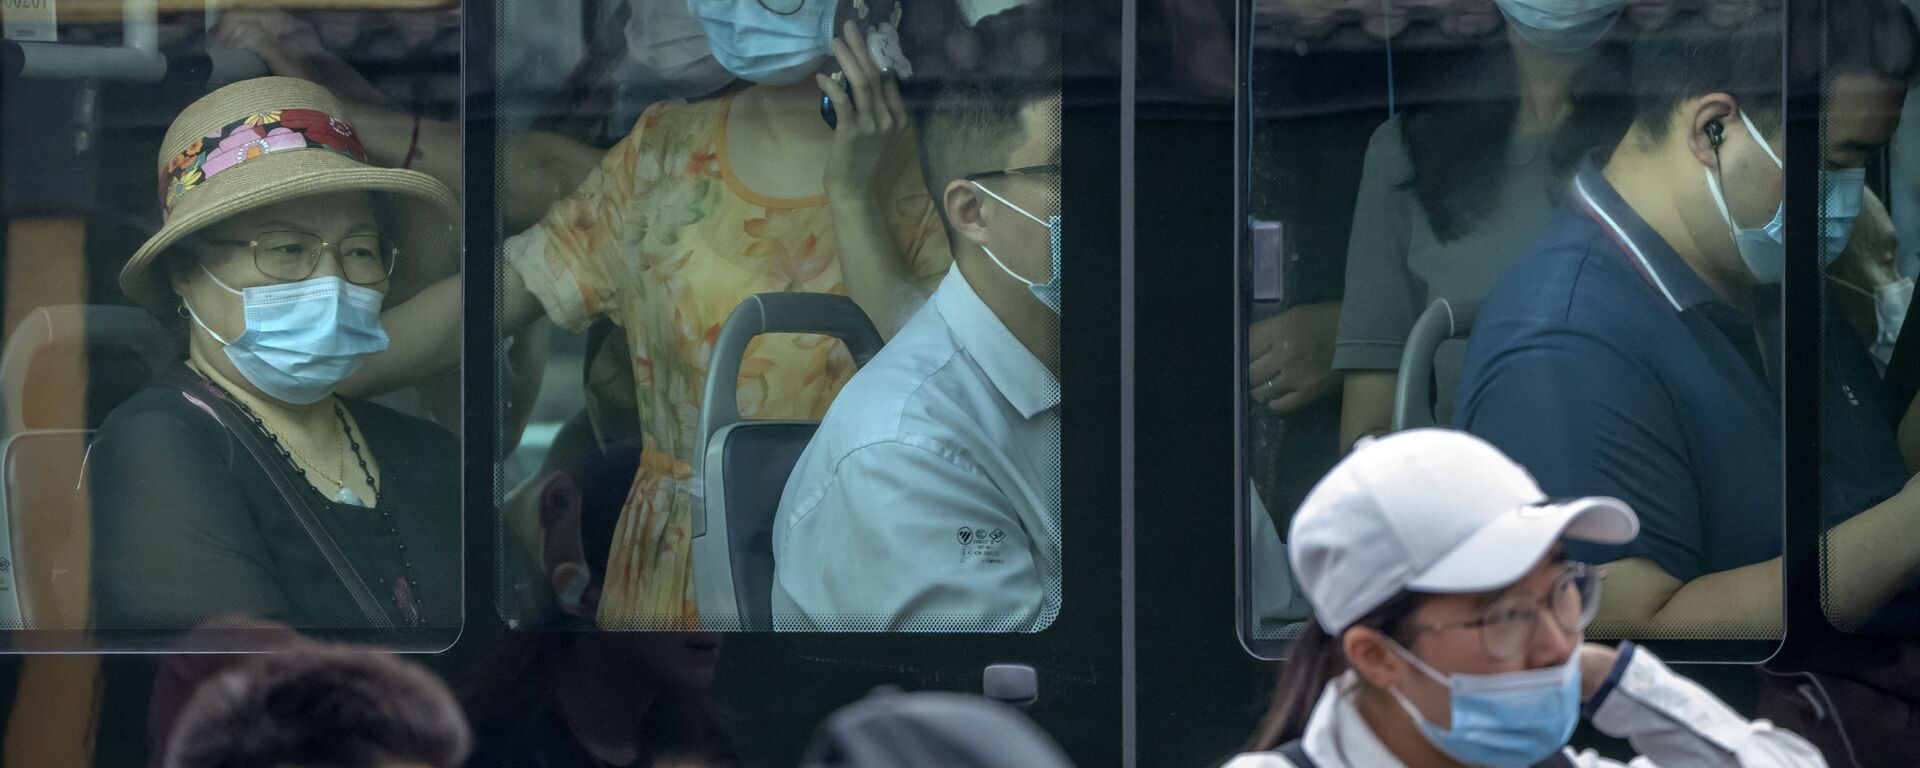 Люди в масках в автобусе в Пекине  - Sputnik Mundo, 1920, 13.12.2021